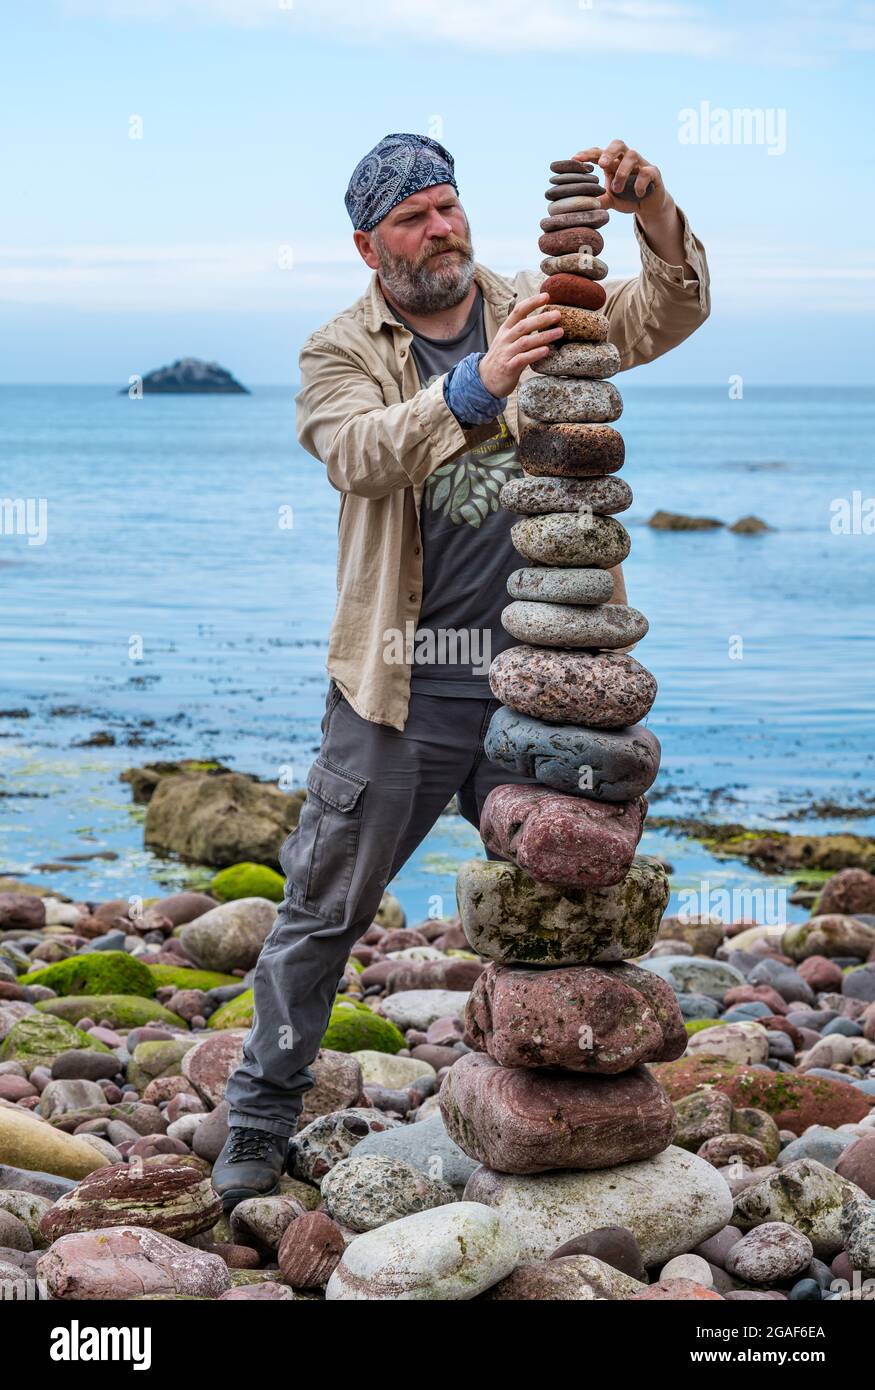 James Brunt, artiste terrestre, empile des pierres dans une tour du championnat européen de pierre sur la plage, Dunbar, East Lothian, Écosse, Royaume-Uni Banque D'Images